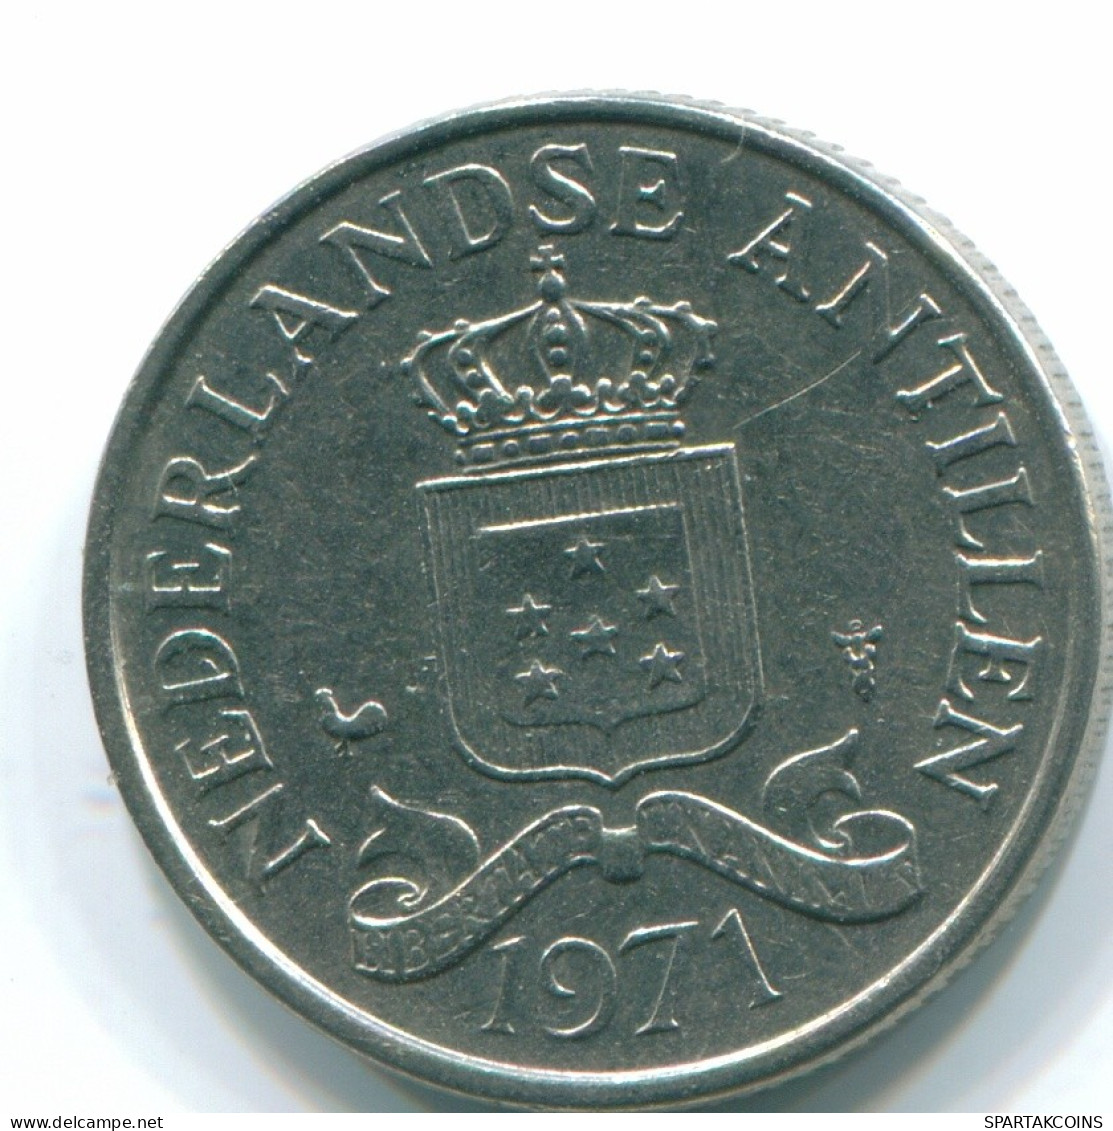 25 CENTS 1971 NIEDERLÄNDISCHE ANTILLEN Nickel Koloniale Münze #S11589.D.A - Niederländische Antillen